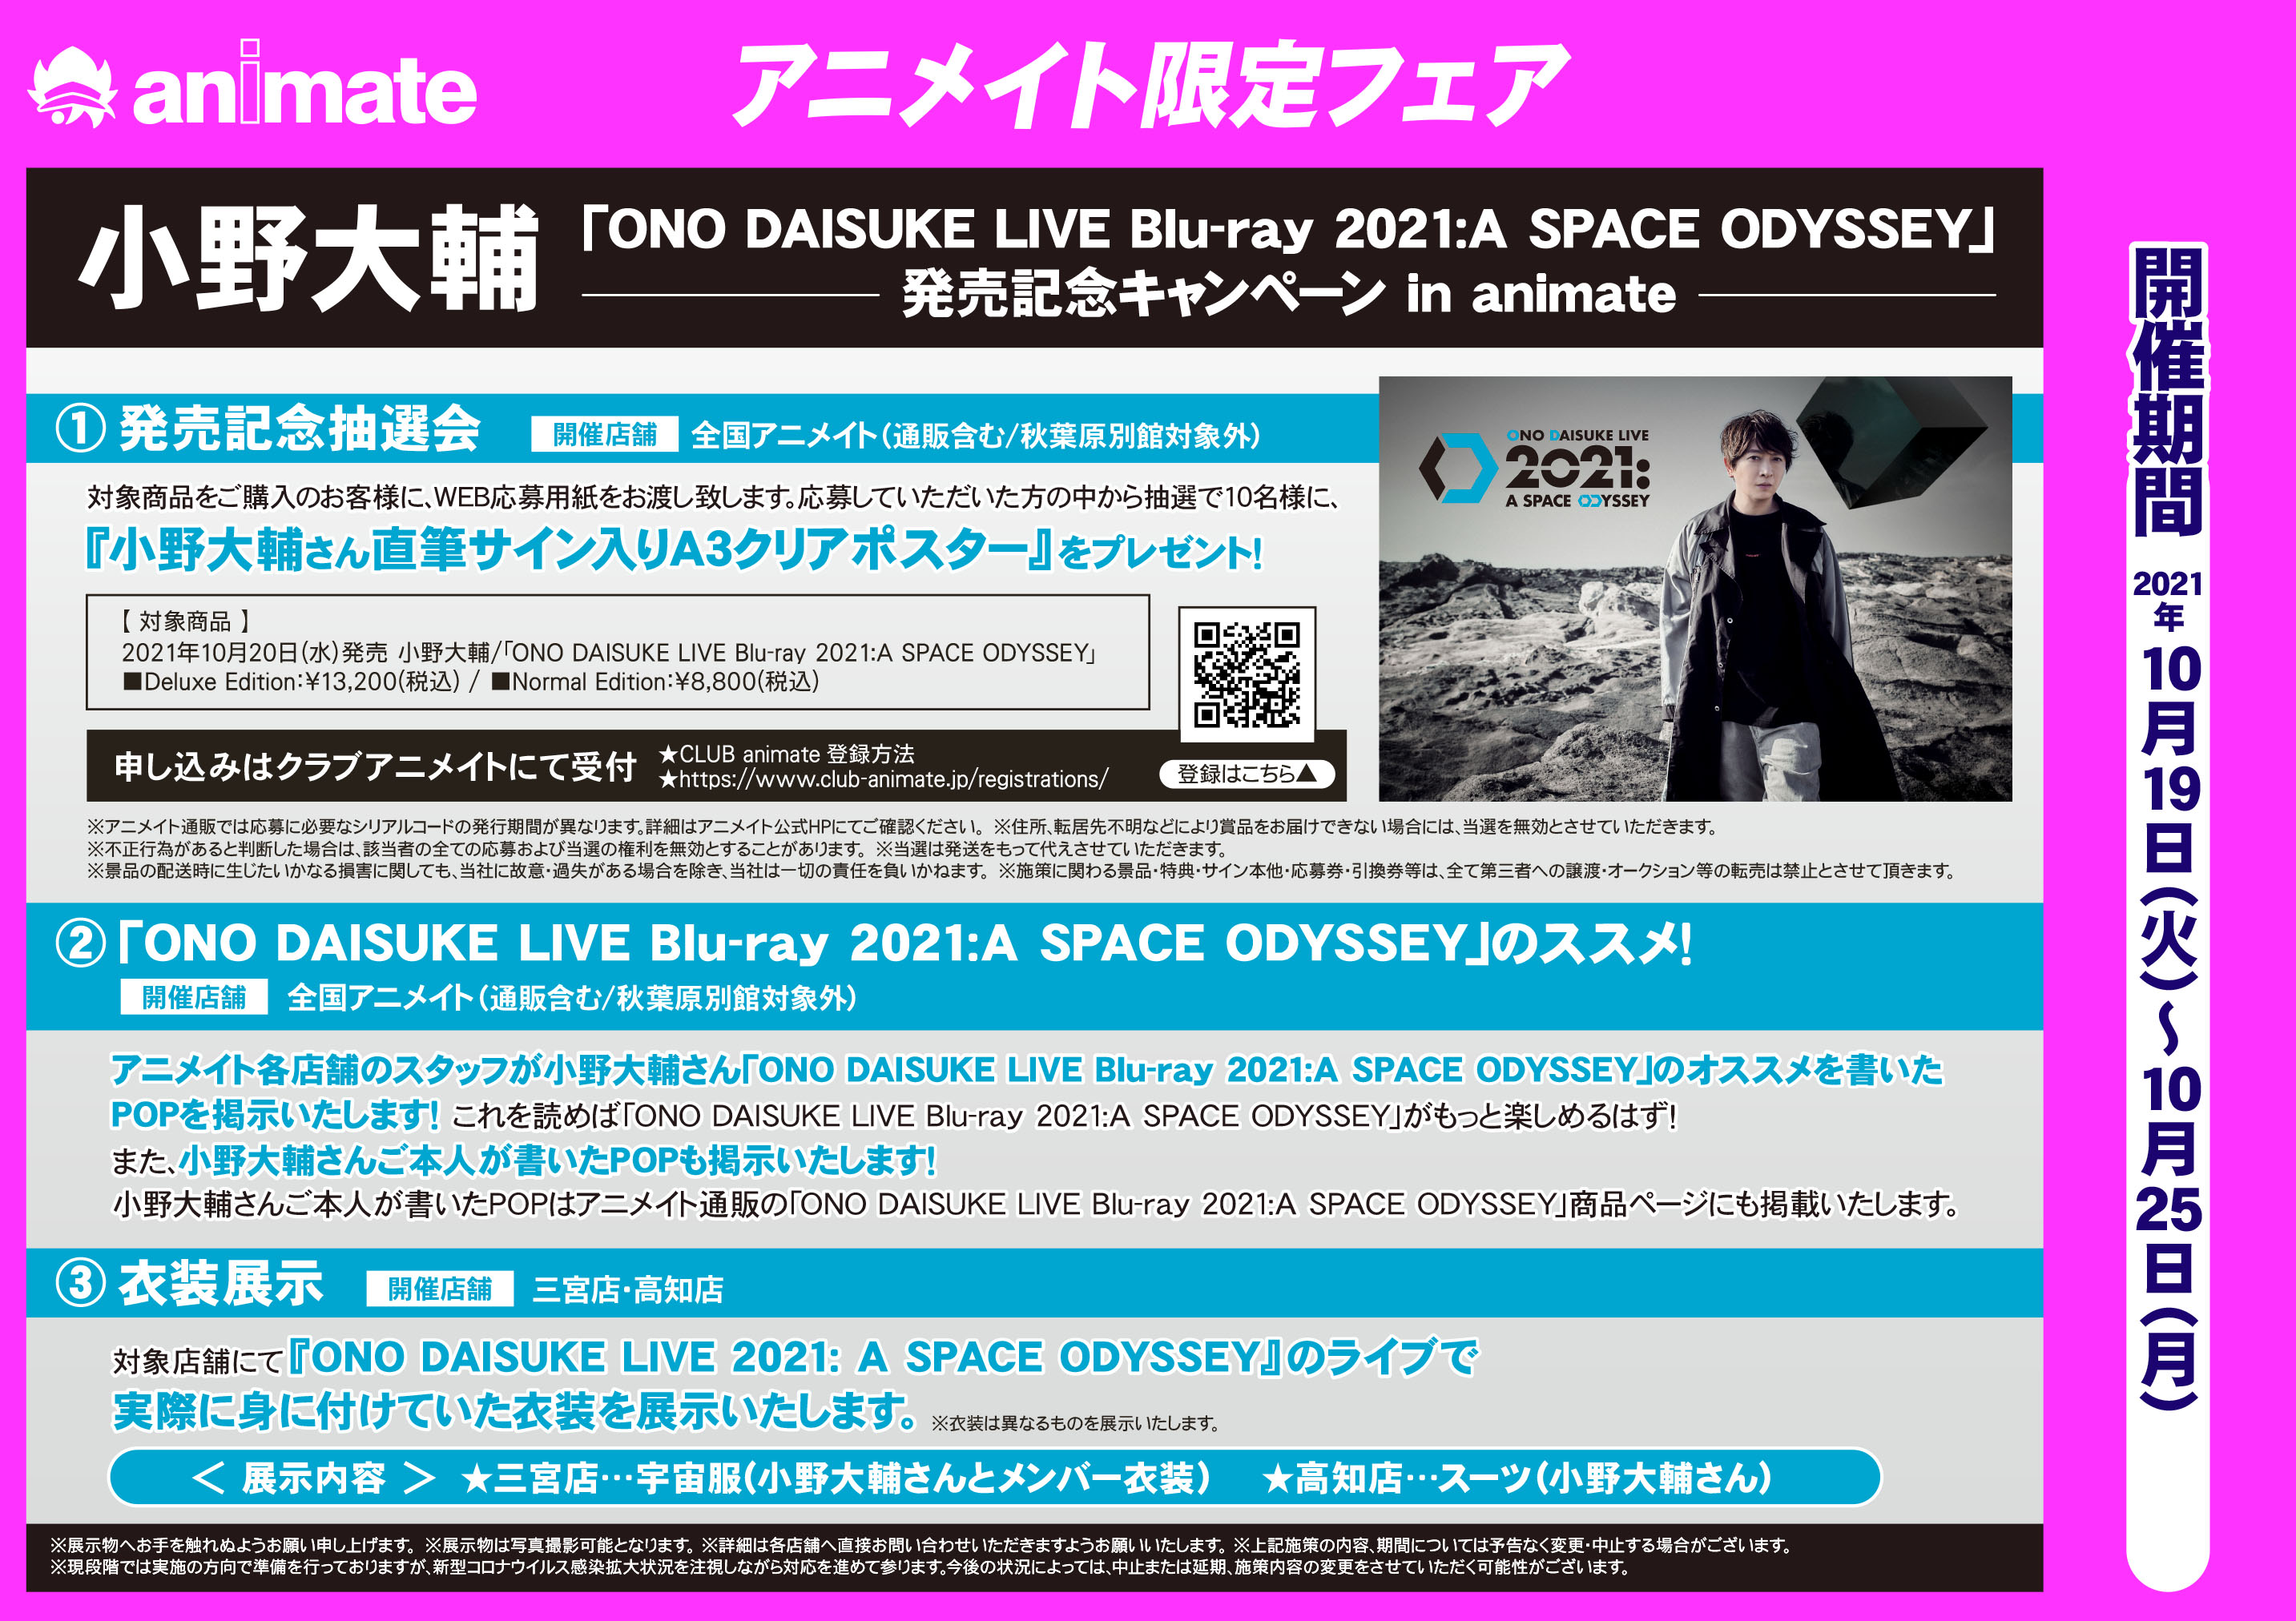 小野大輔 Ono Daisuke Live Blu Ray 21 A Space Odyssey 発売記念キャンペーン アニメイト高知